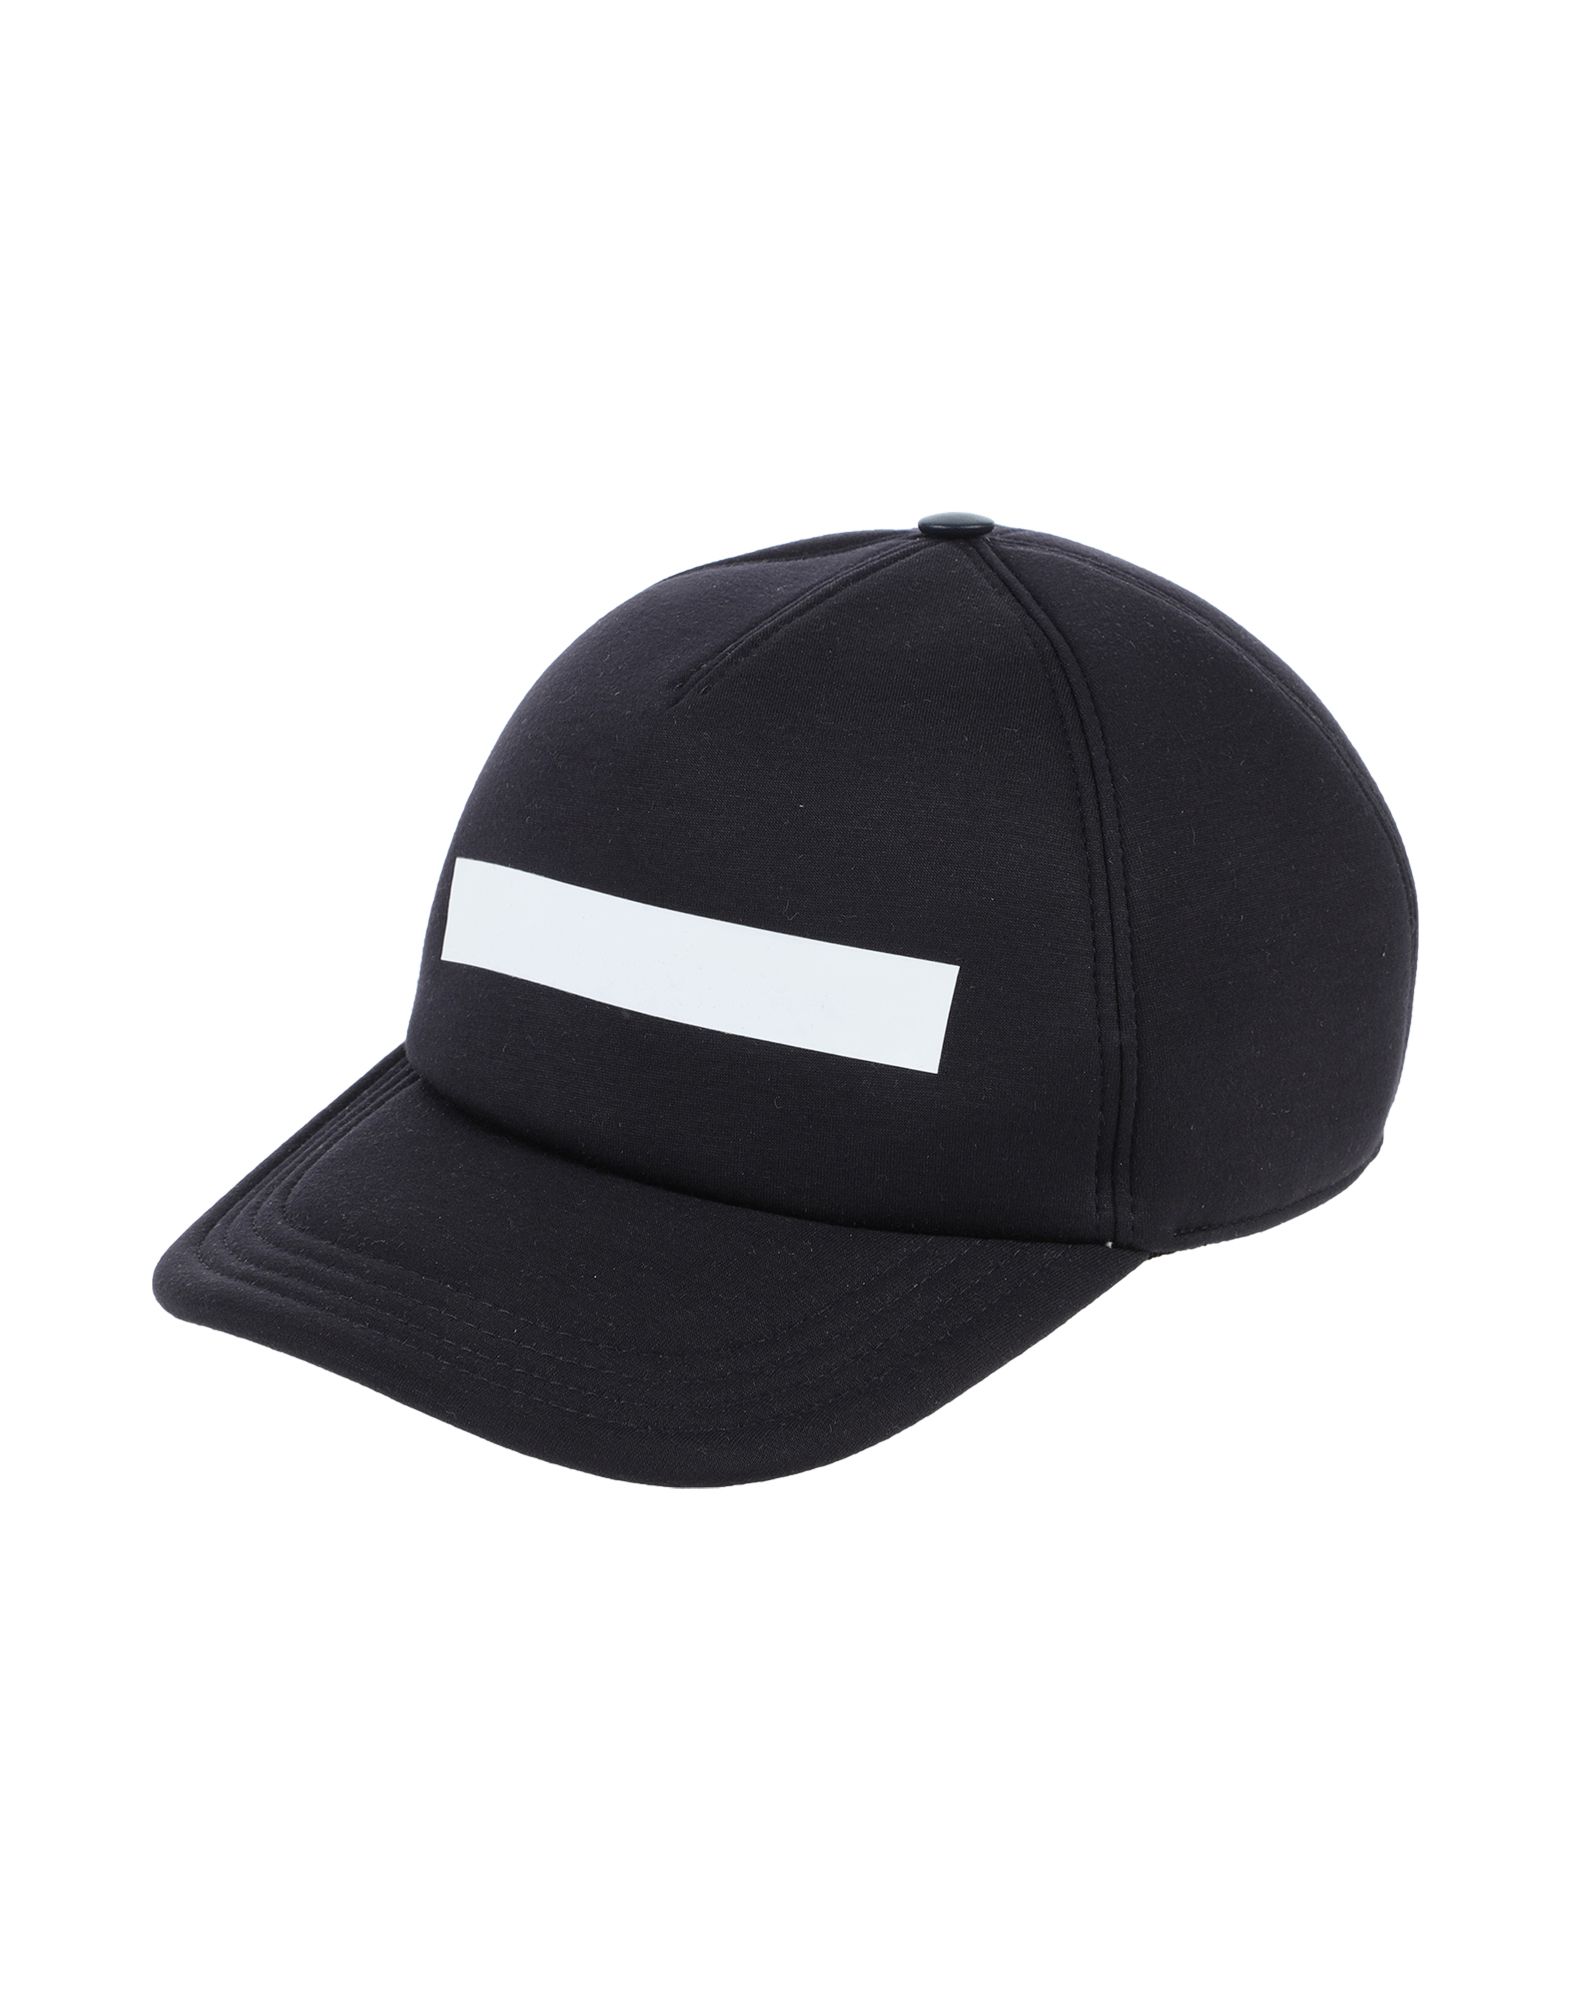 NEIL BARRETT Hats - Item 46696401